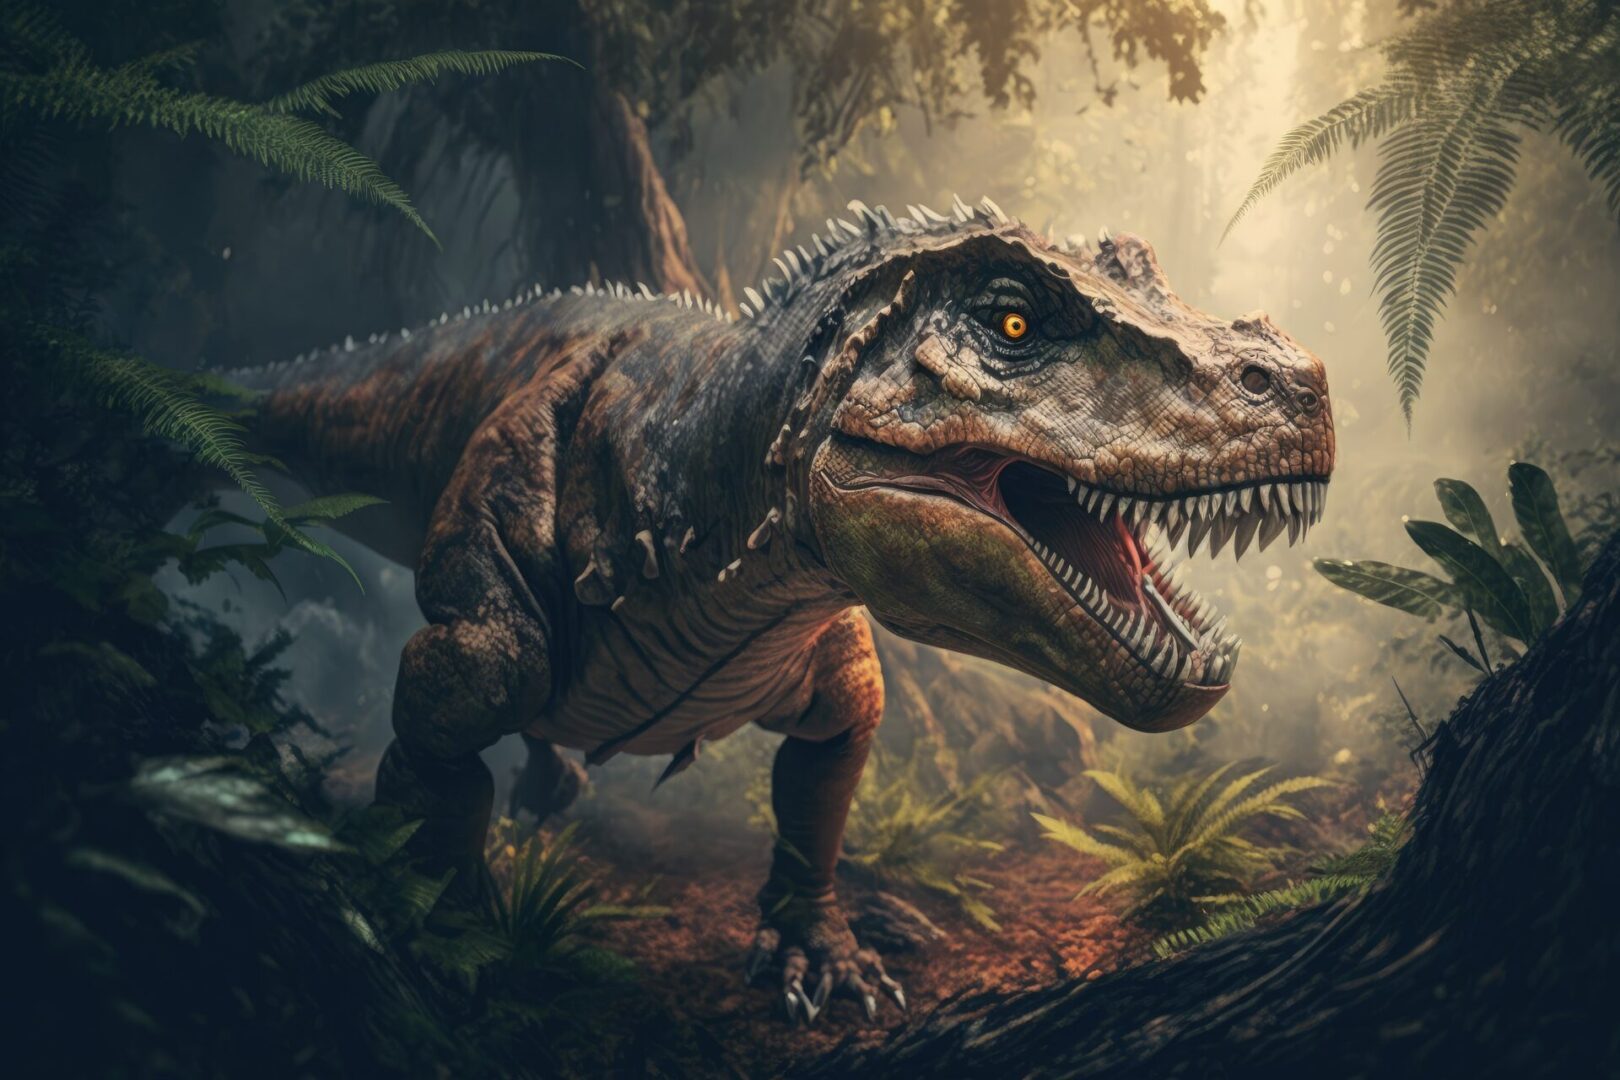 In the Jurassic jungle, a Tyrannosaurus stalks its prey. Dinosaur Period. A hunting T rex